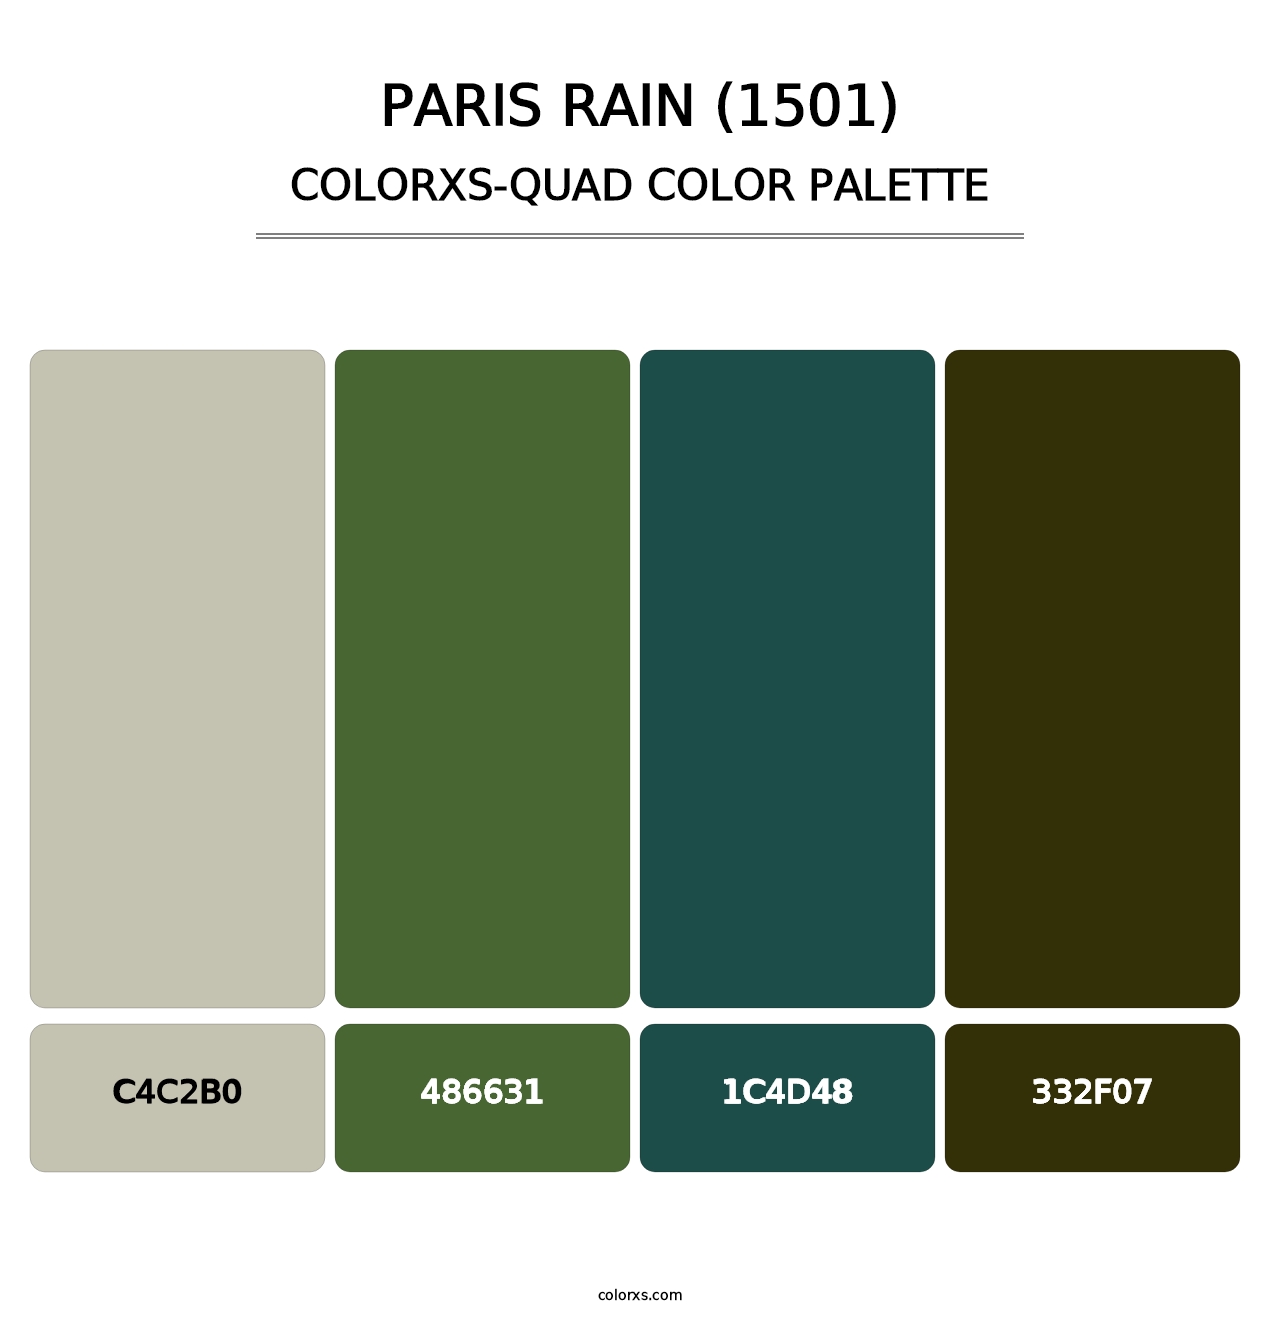 Paris Rain (1501) - Colorxs Quad Palette